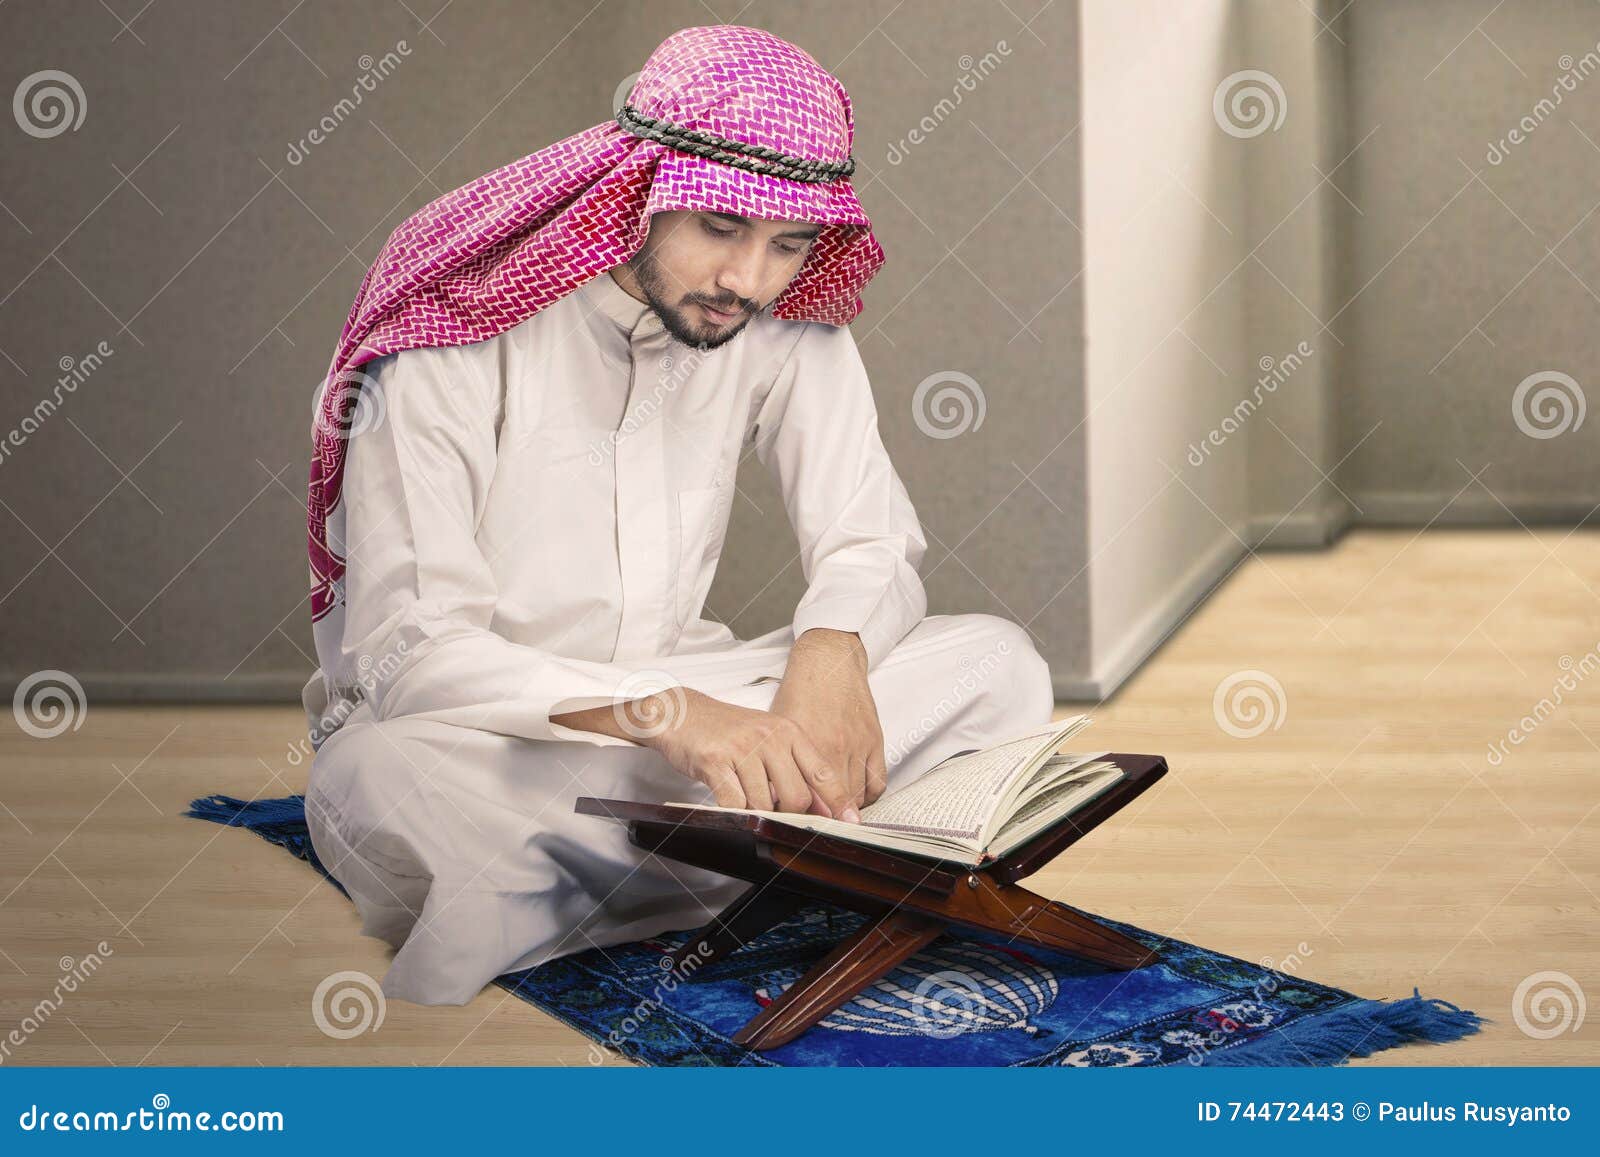 Якуб насим сура. Мусульманский человек. Сидеть по мусульмански. Человек читает Коран.